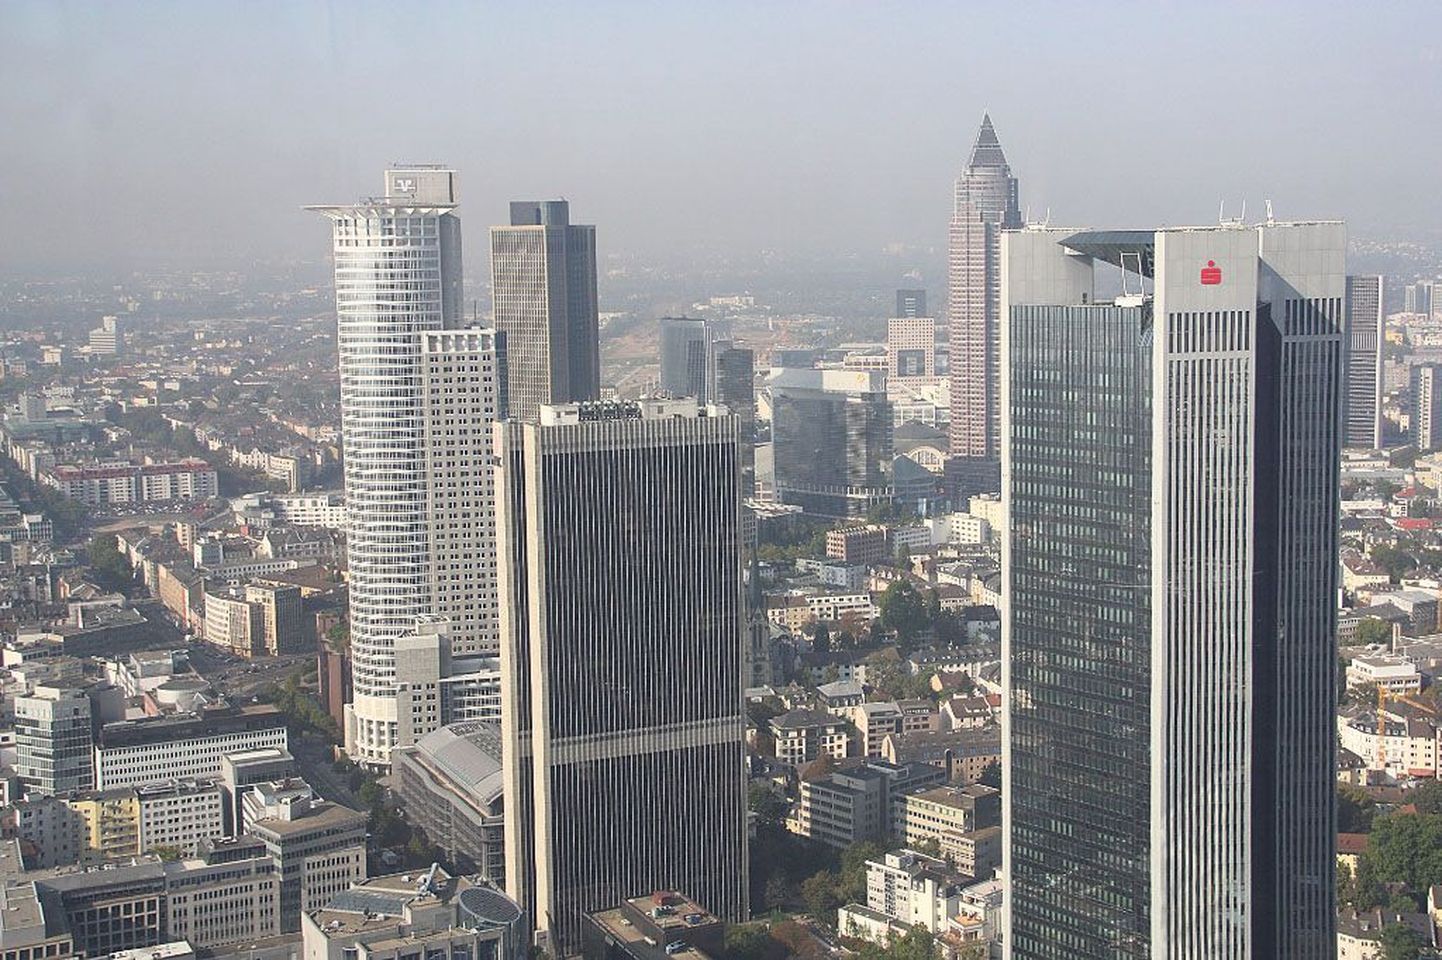 Frankfurt Maini ääres on mitte ainult Saksamaa, vaid kogu Euroopa Liidu panganduse keskus. Nendes kõrghoonetes juhitakse rahavooge ja üritatakse võidelda euroala näriva võlakriisiga.